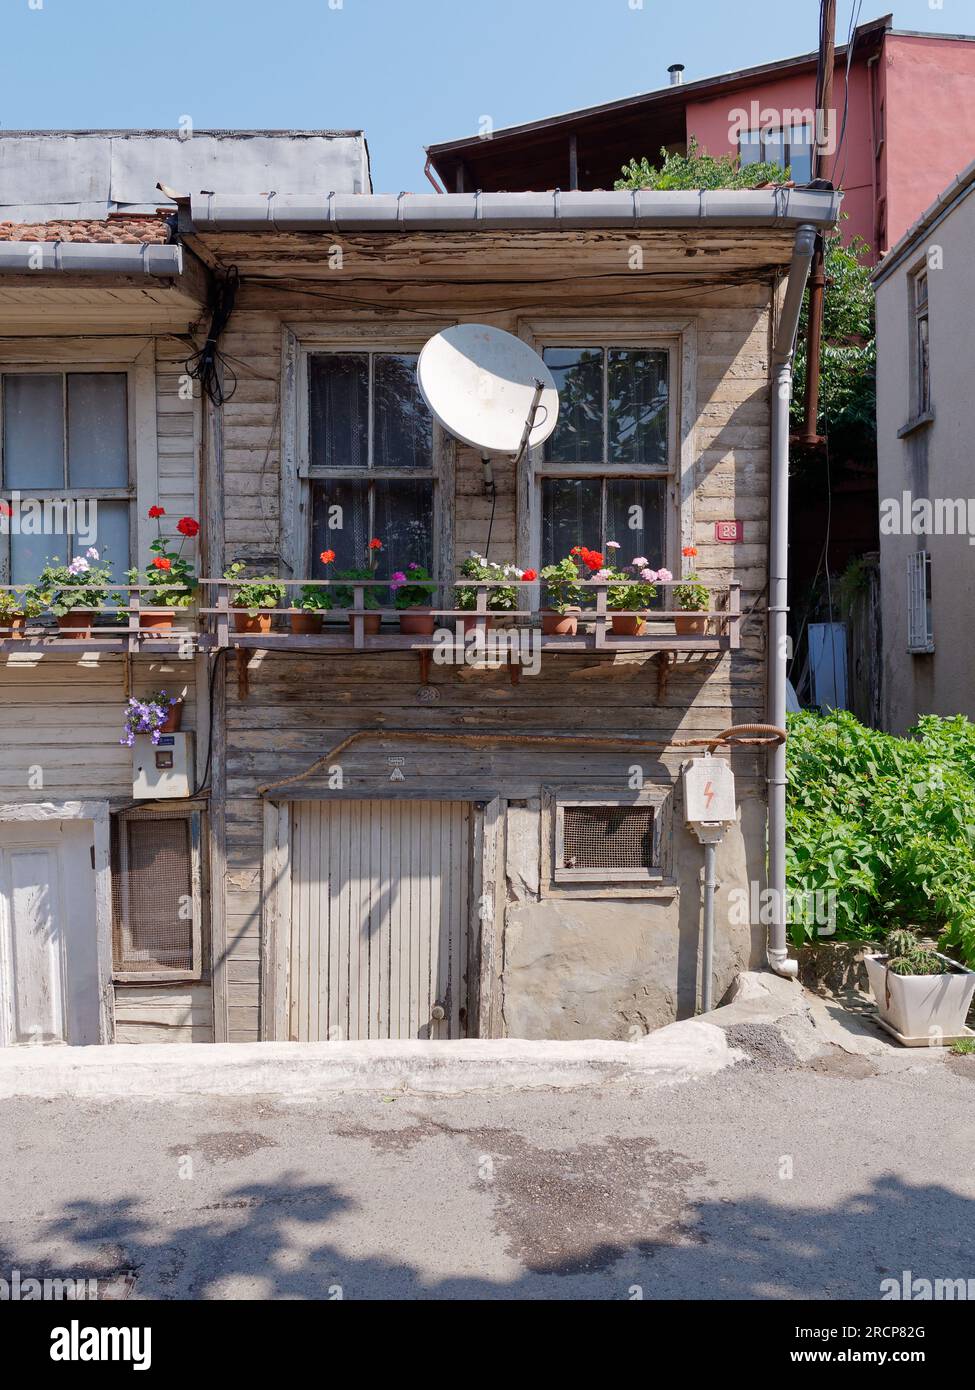 Maison délabrée mais pittoresque à Anadolu avec un rebord de fenêtre en bois plein de pots de fleurs et une antenne parabolique au-dessus. Istanbul, Turquie Banque D'Images